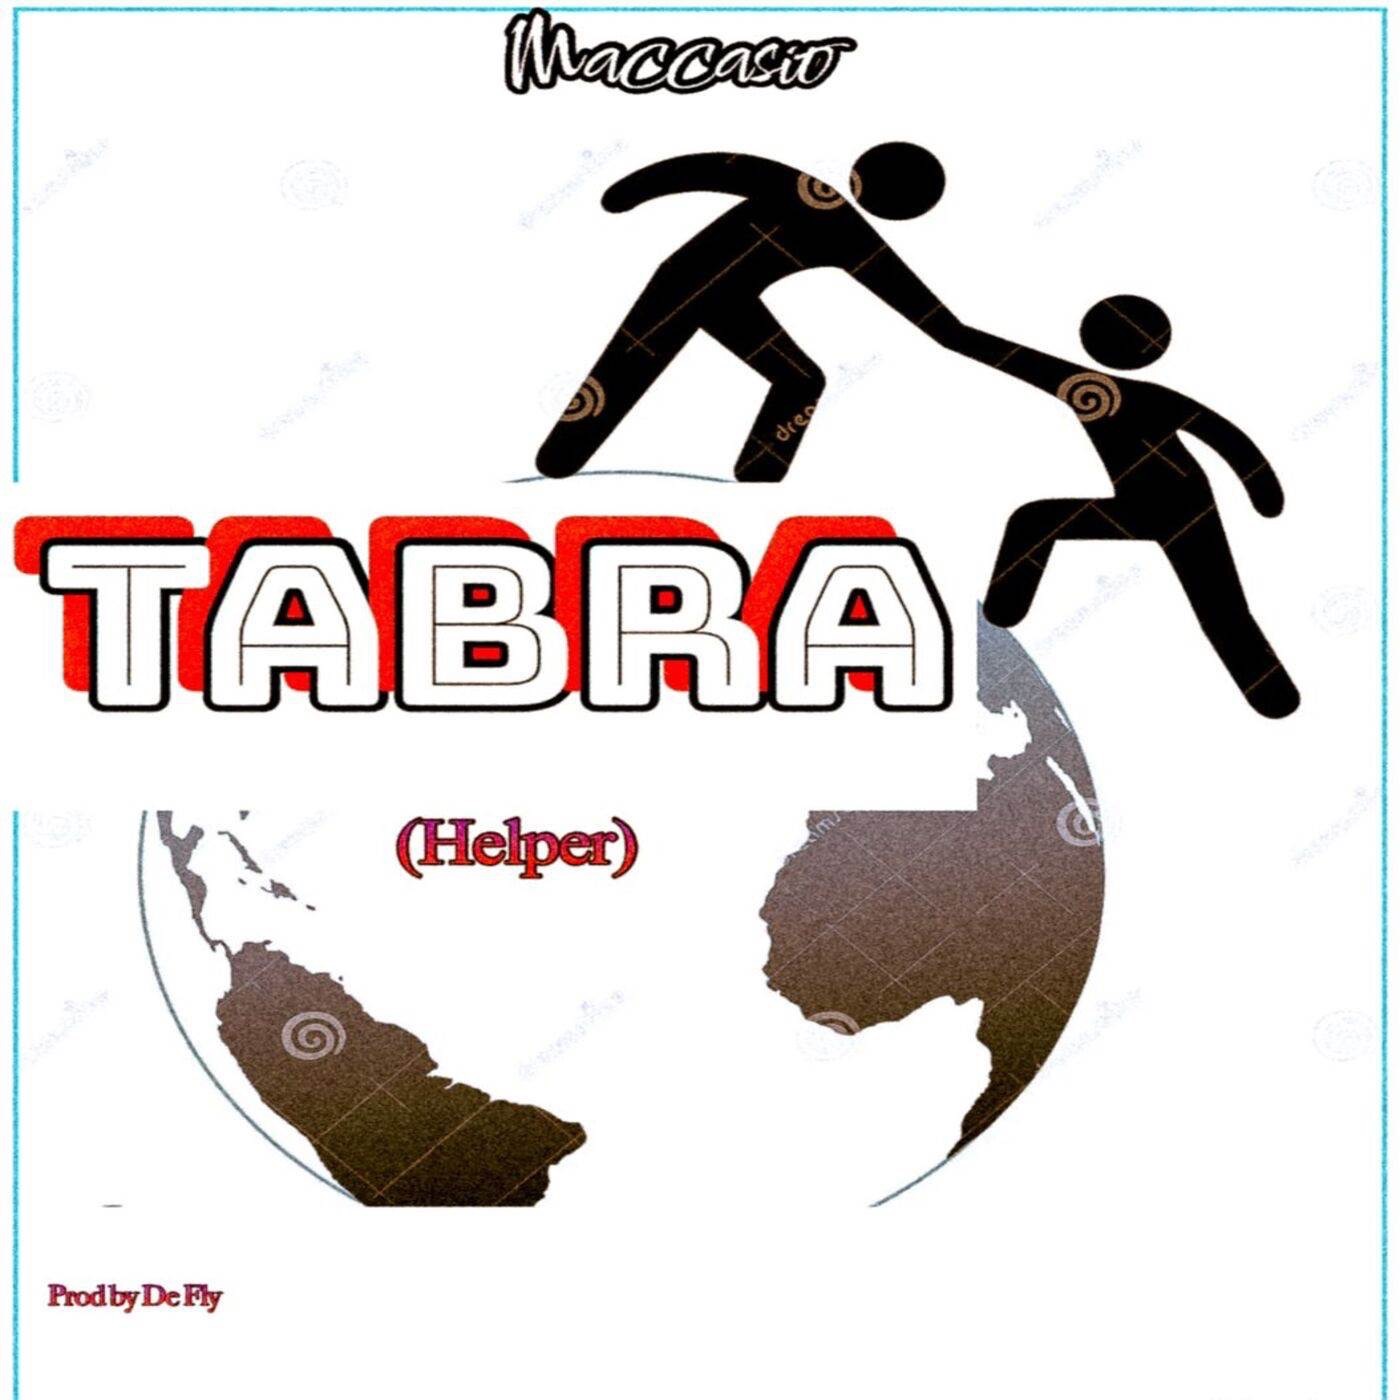 Maccasio - TABRA (Helper)